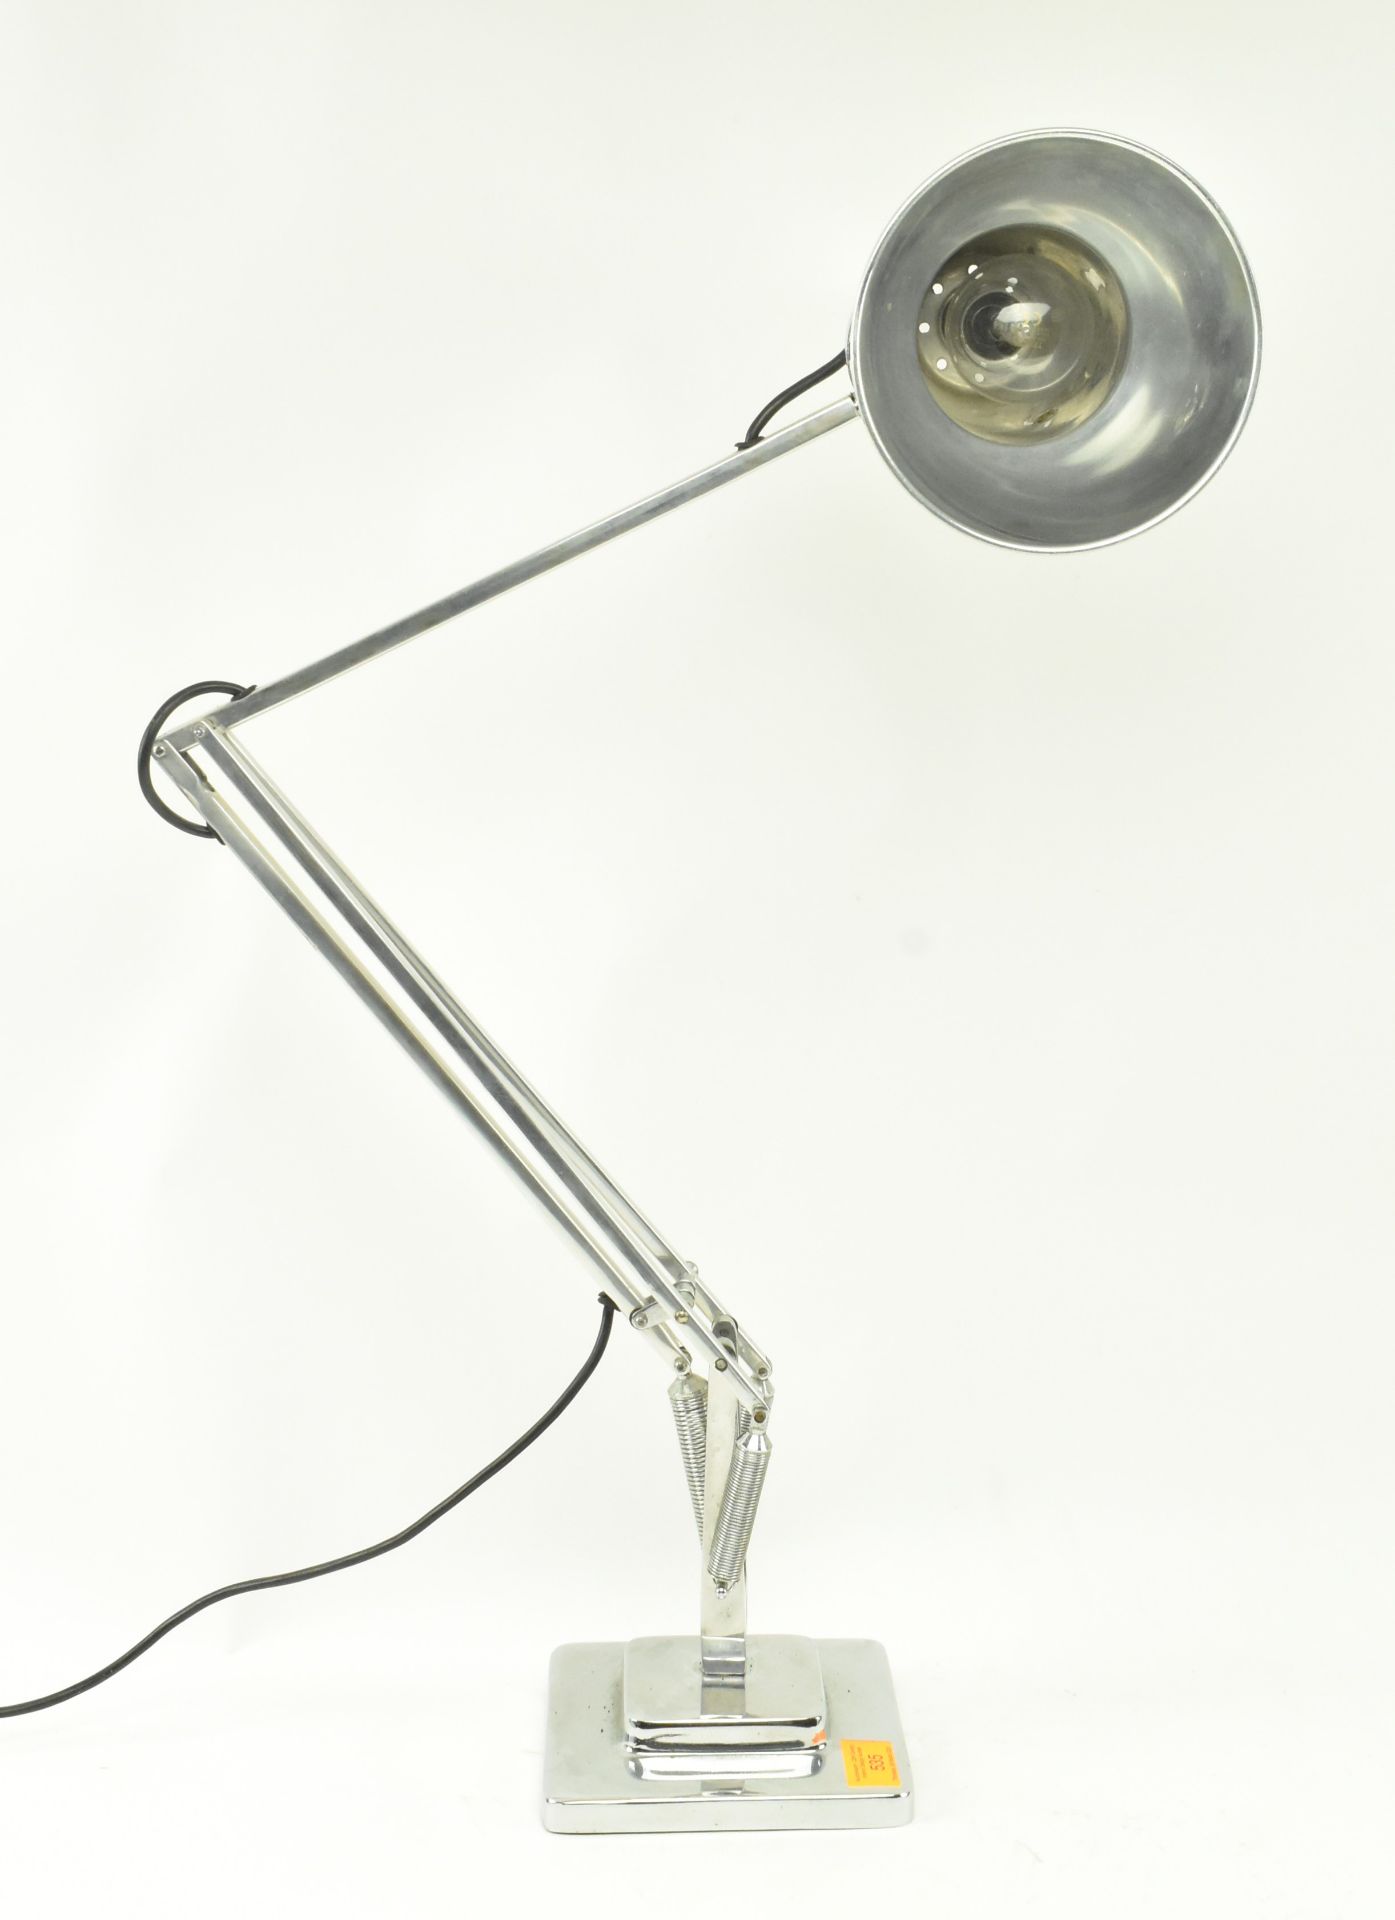 HERBERT TERRY - MODEL 1227 - ANGLEPOISE DESK LAMP - Image 2 of 7